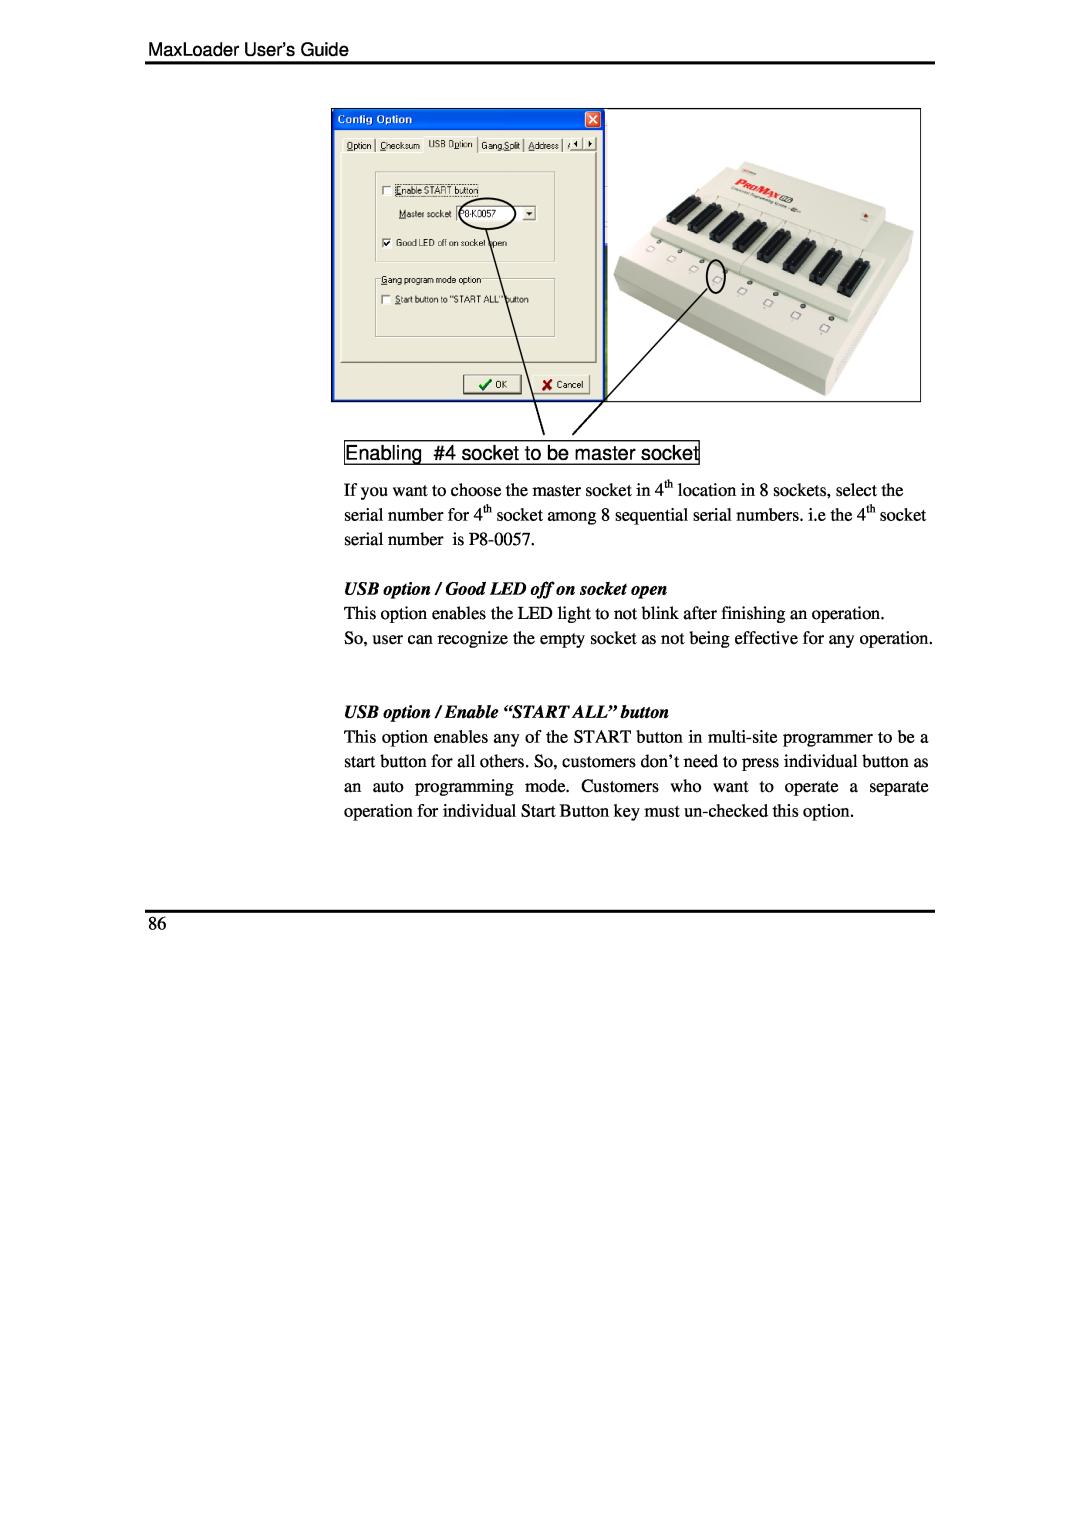 IBM MaxLoader manual Enabling #4 socket to be master socket, USB option / Good LED off on socket open 